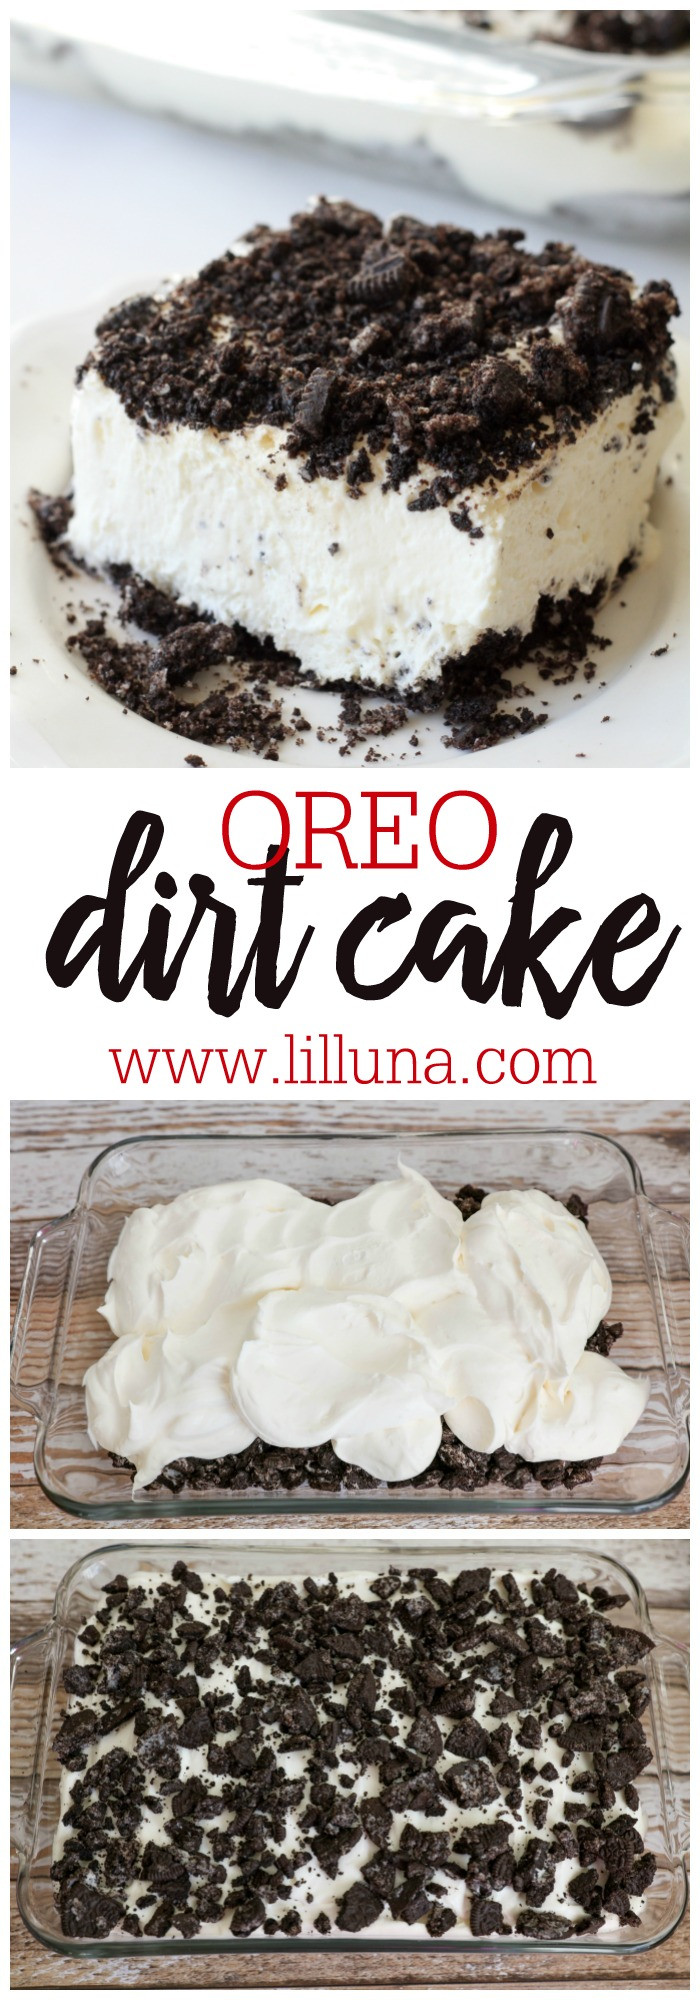 Oreo Dirt Cake Recipe
 Oreo Dirt Cake recipe